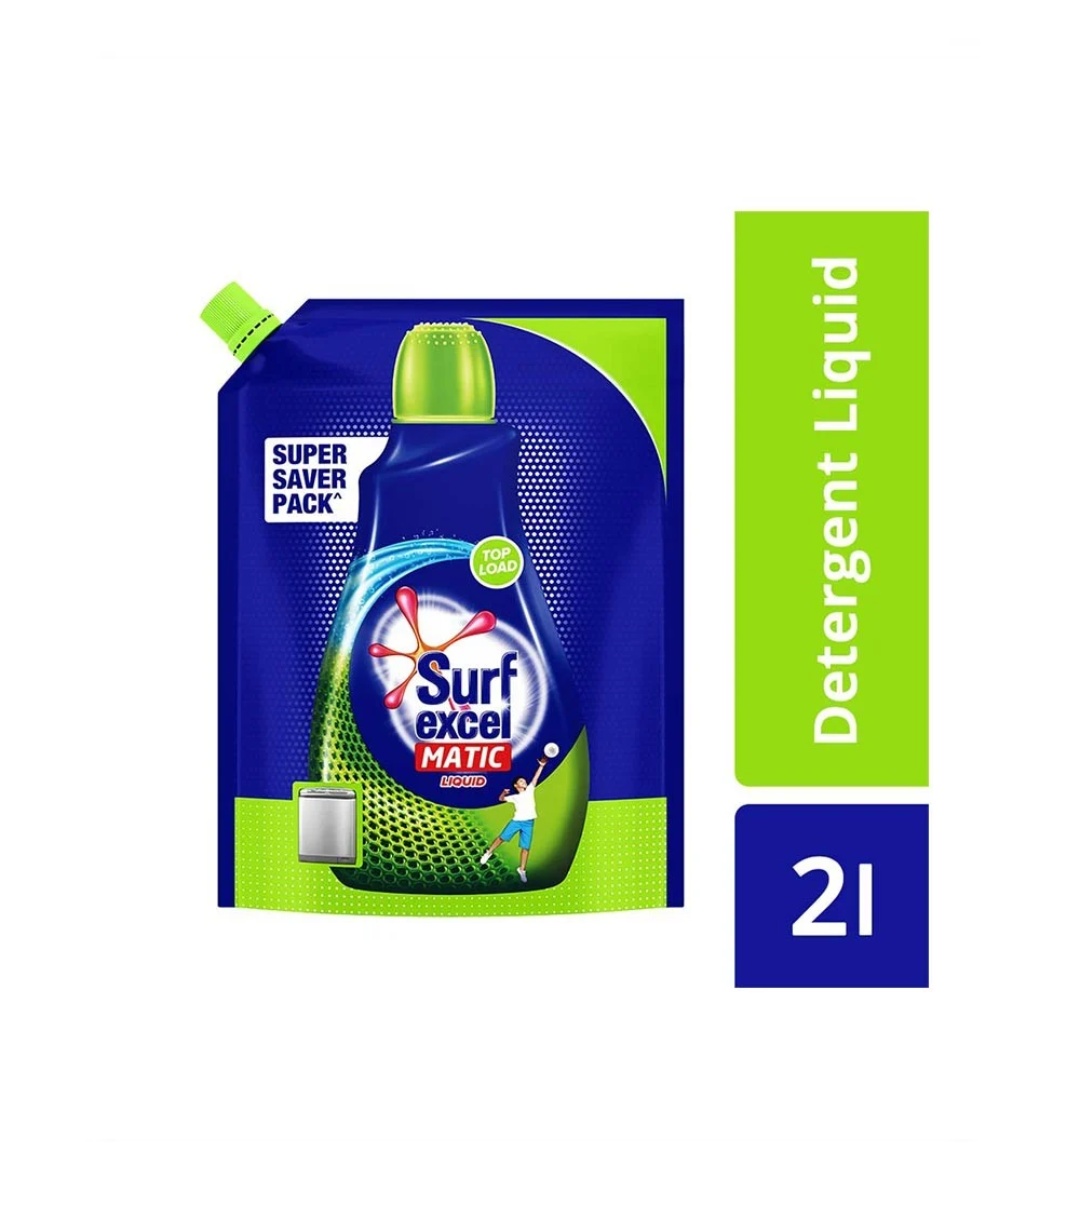 Surf Excel Matic Top Load Liquid Detergent (Pouch), 2 lit